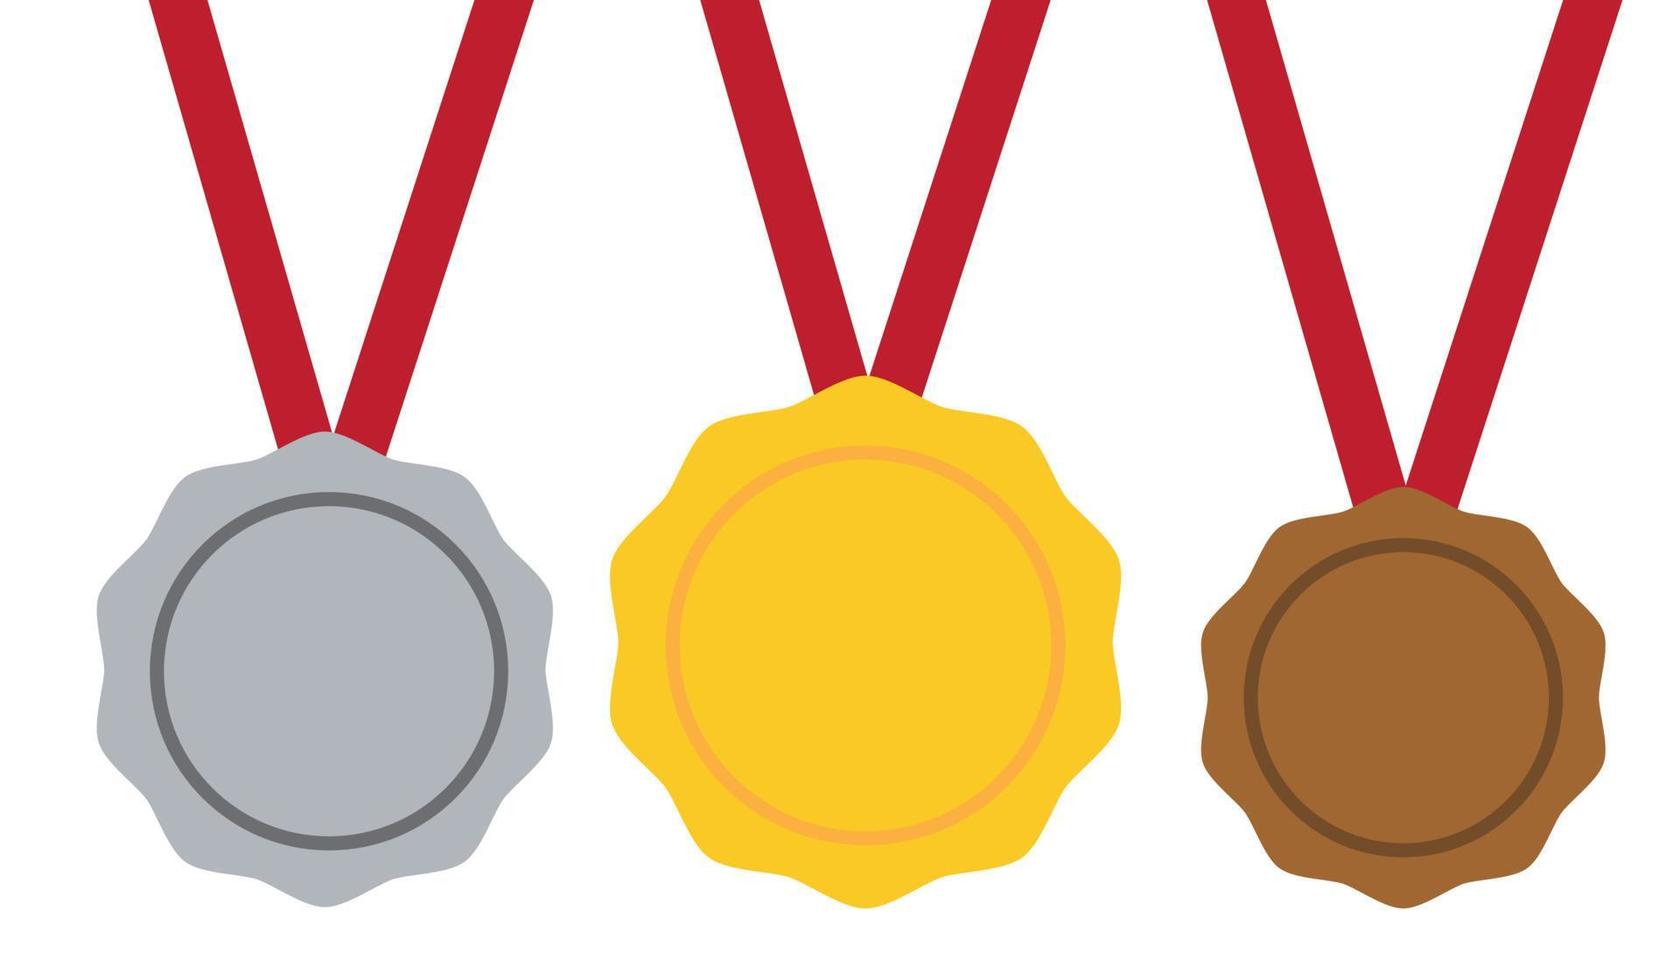 medalla de oro, plata, bronce. 1er, 2do y 3er lugar. trofeo con cinta roja. estilo plano, vector stock.